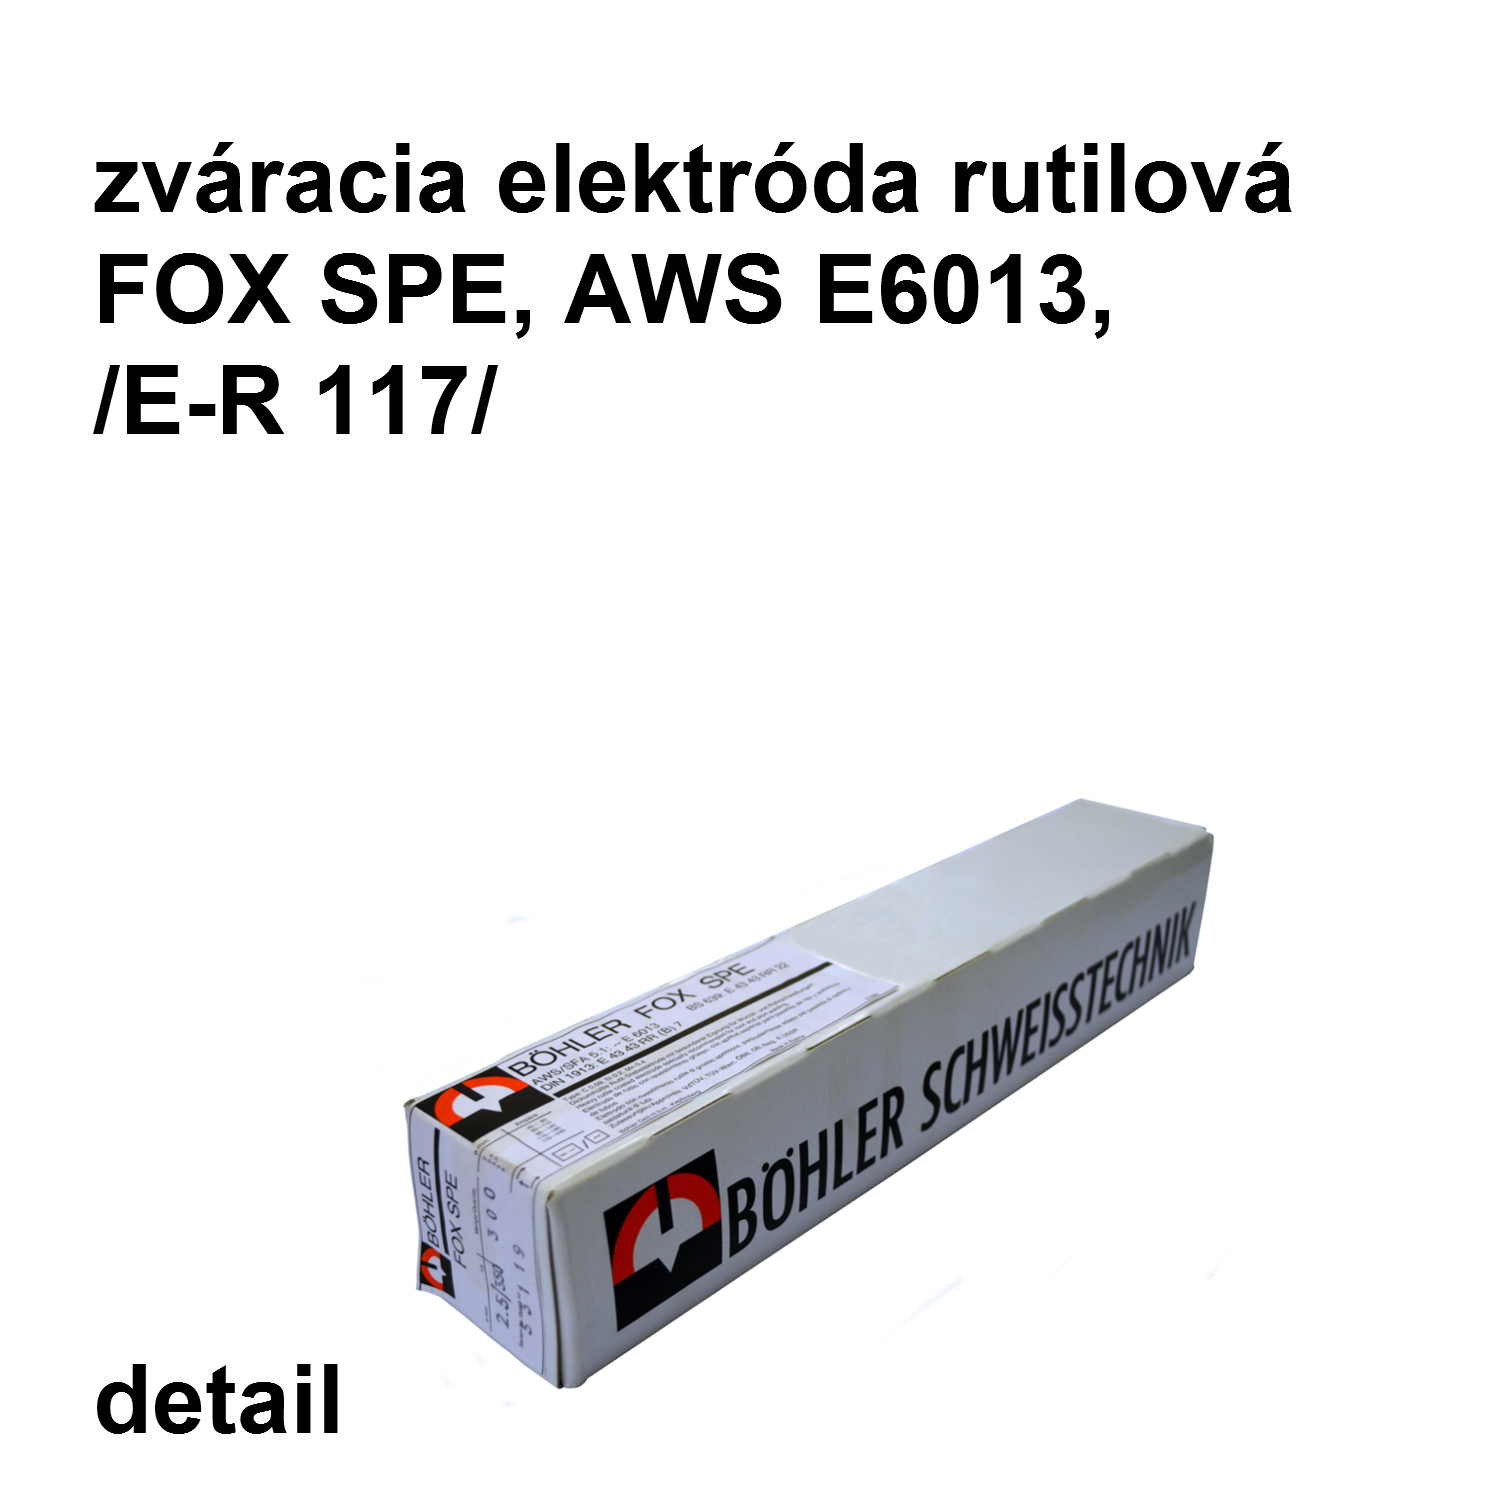 zváracia elektróda FOX SPE  3,2/350 mm, AWS E6013 /E-R117/ rutilová elektróda   